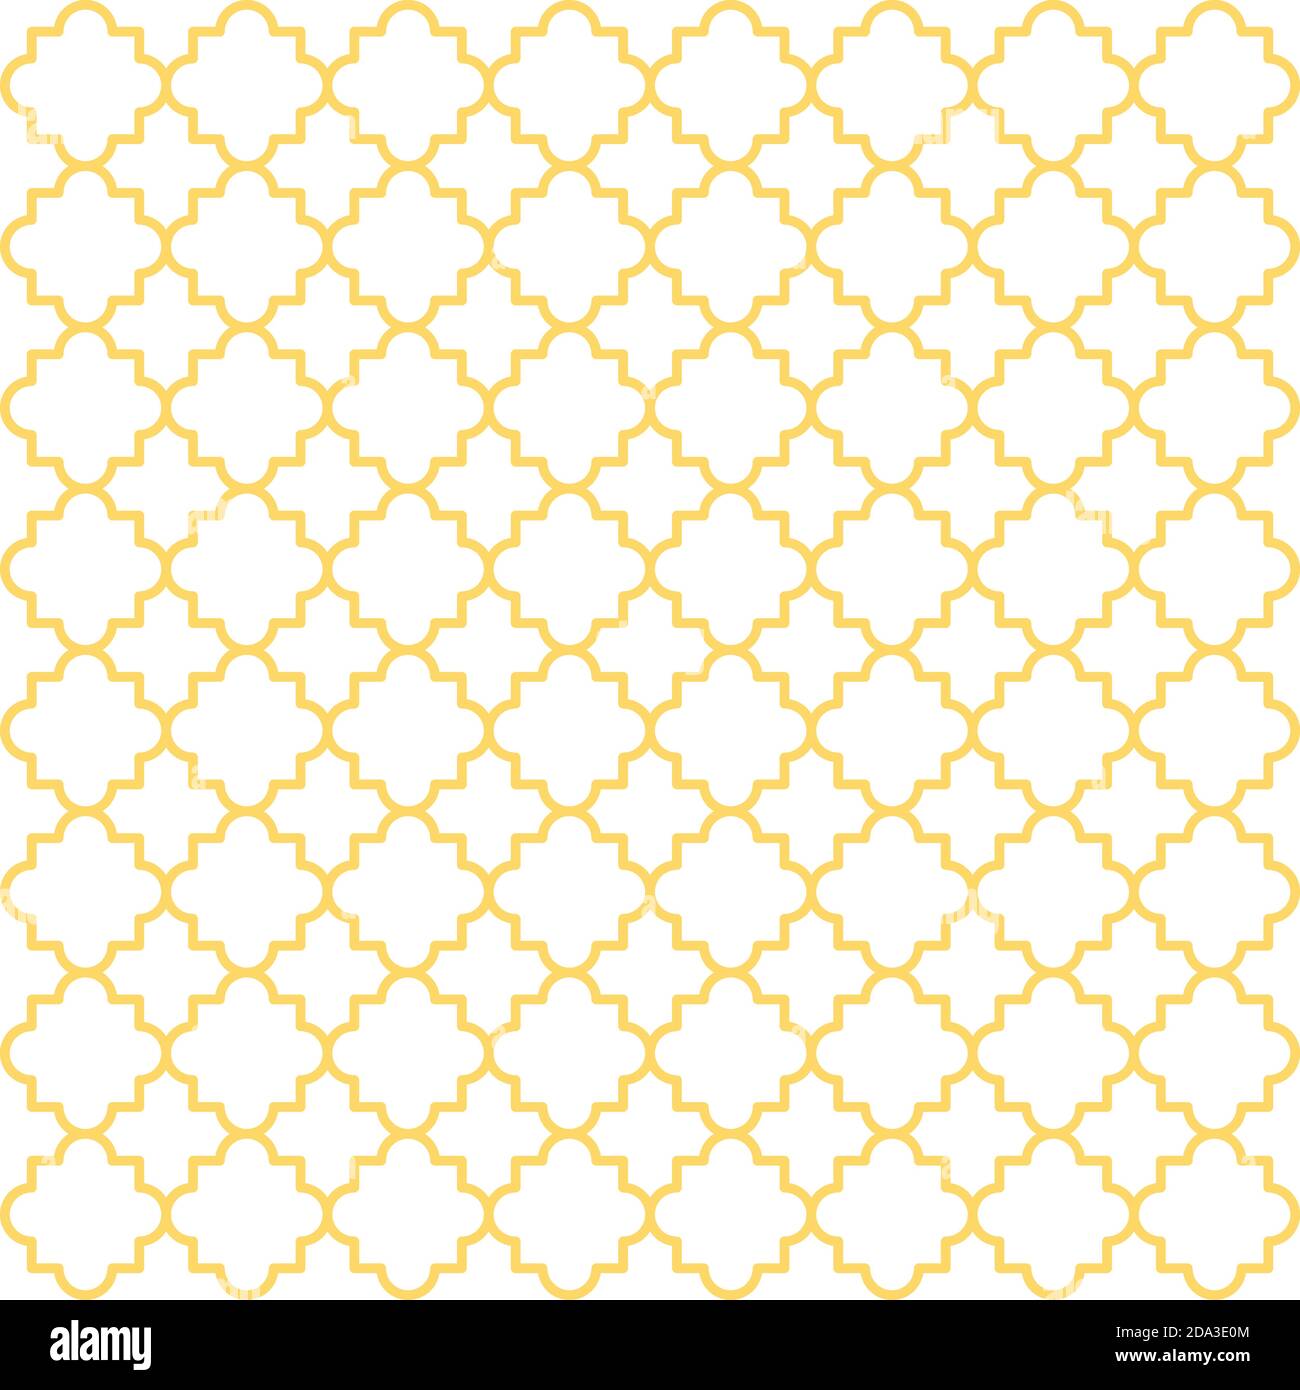 Tradizionale reticolo di quatrefoil. Sfondo vettoriale senza giunture. Forme di quatrefoil gialle su sfondo bianco Illustrazione Vettoriale